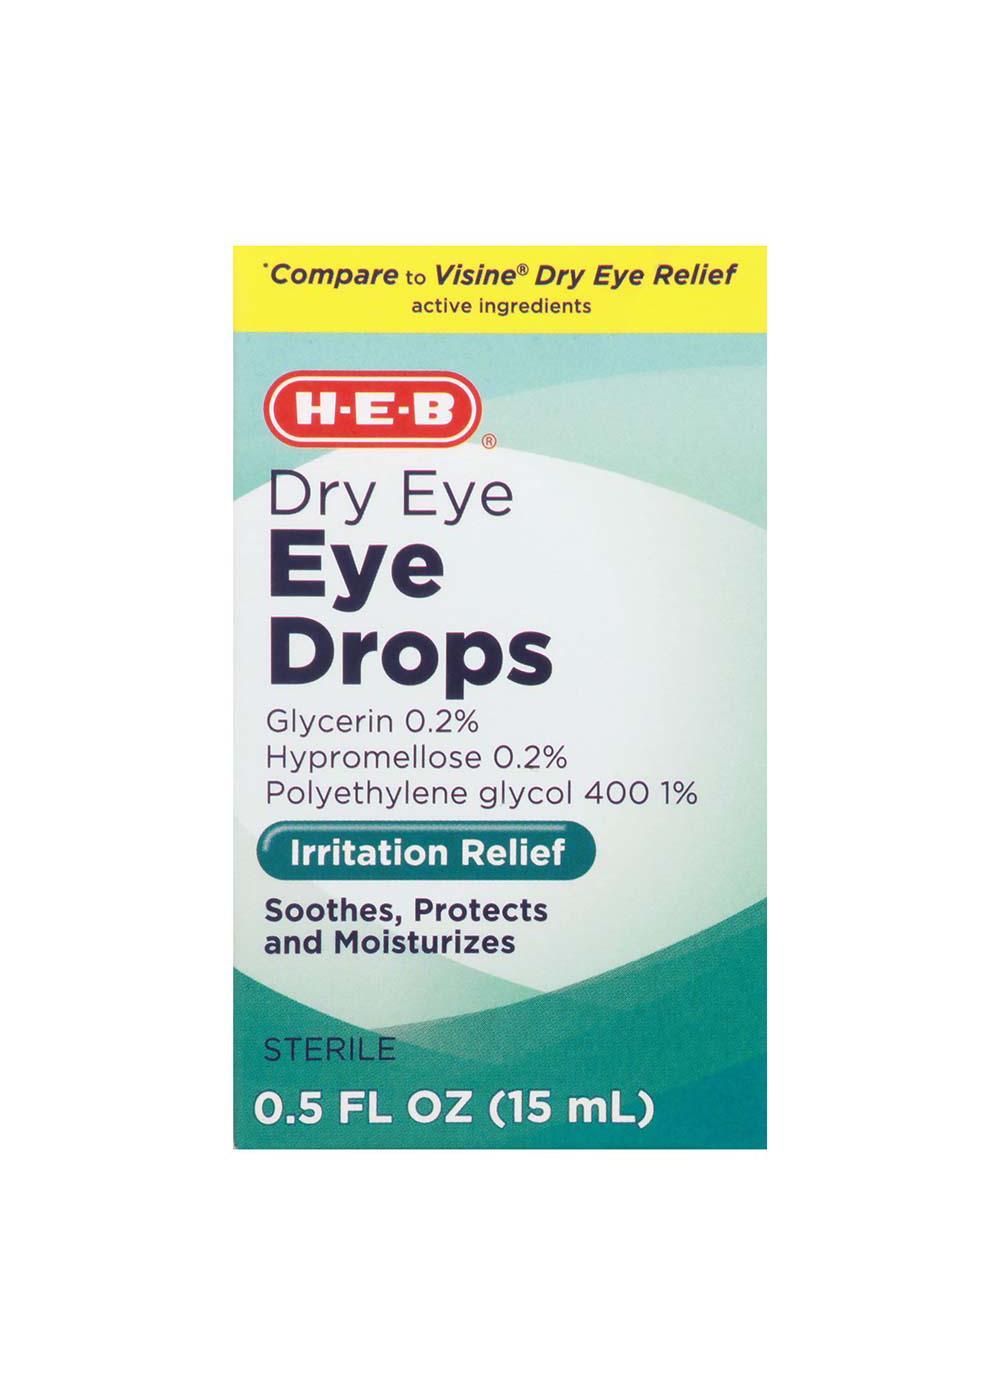 H-E-B Dry Eye Eye Drops